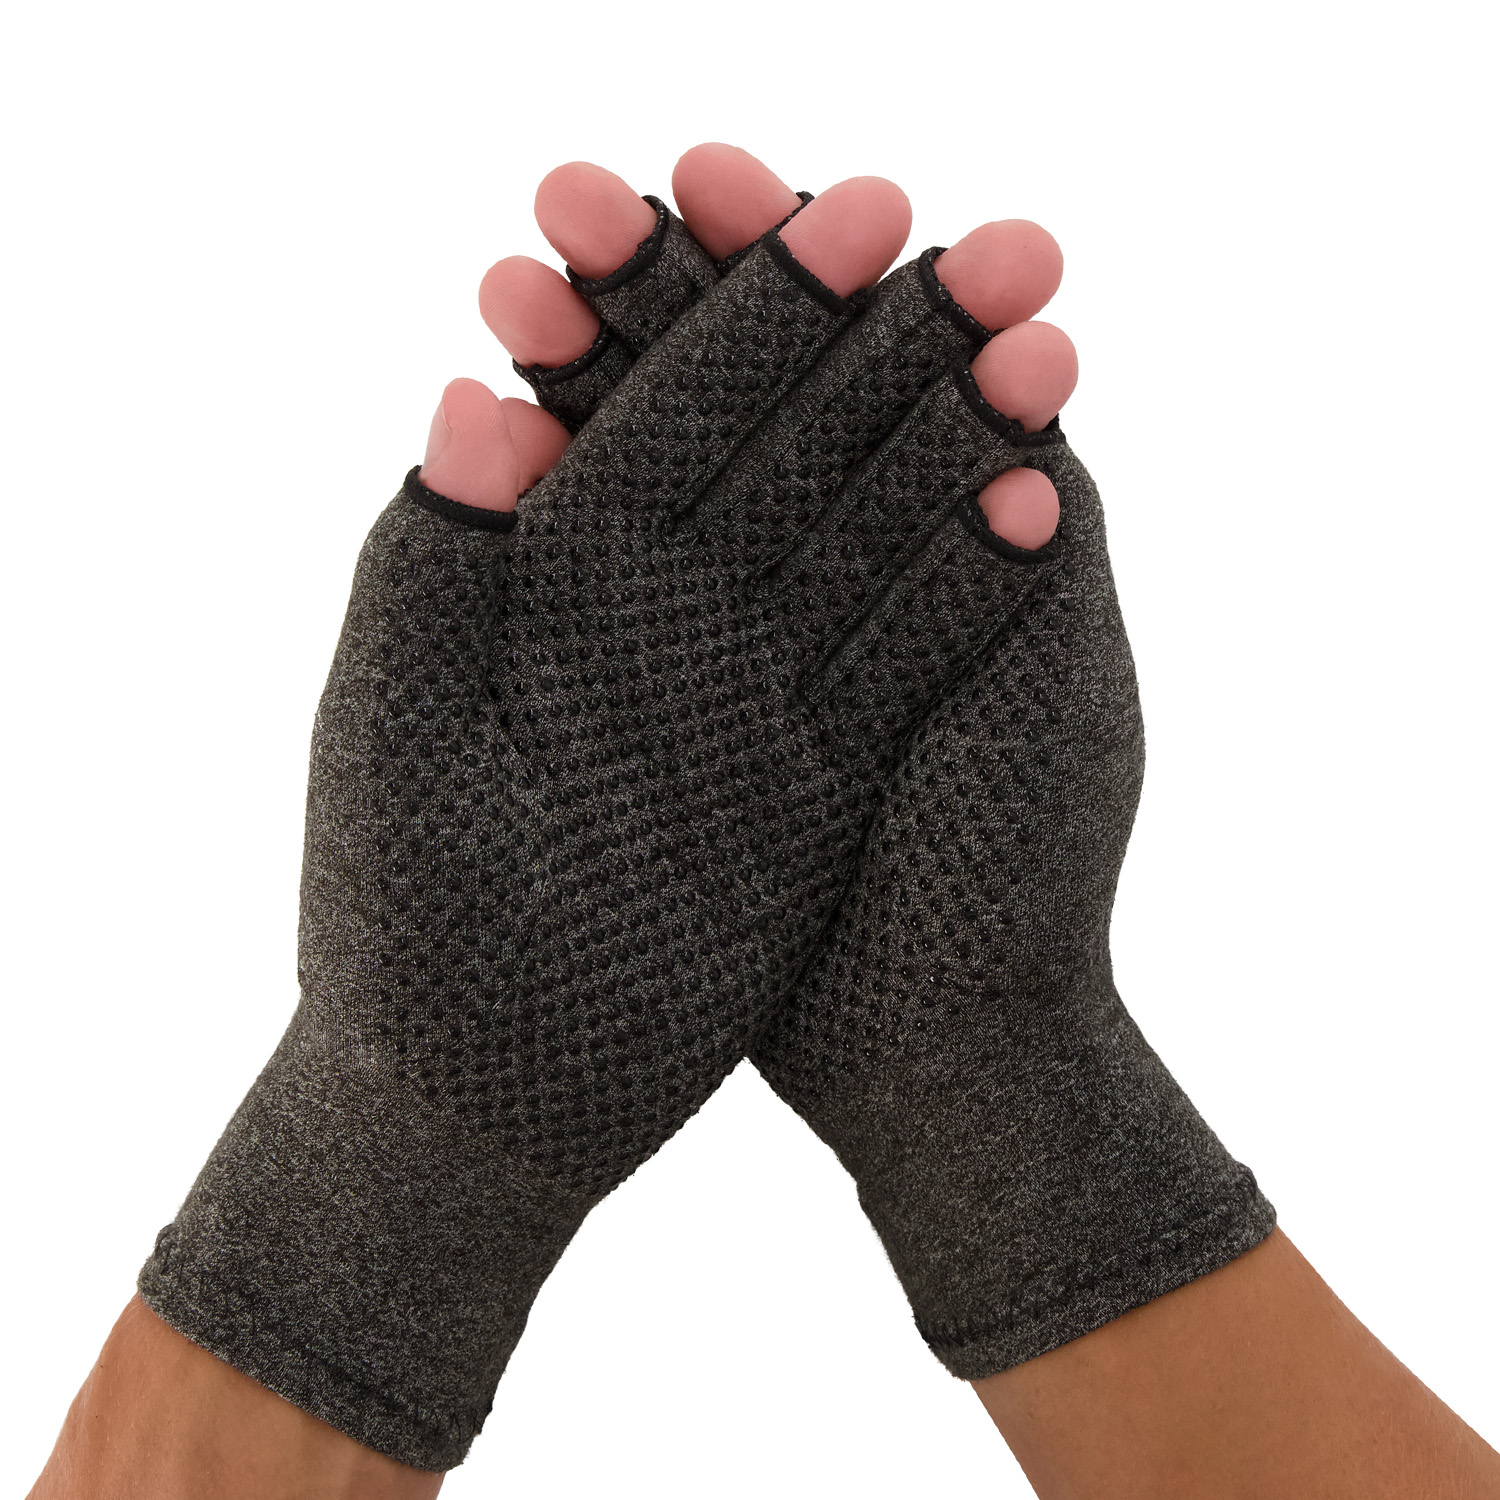 Medidu Dunimed Artrose / Reuma Handschoenen met antisliplaag (Per paar) (Grijs & beige)